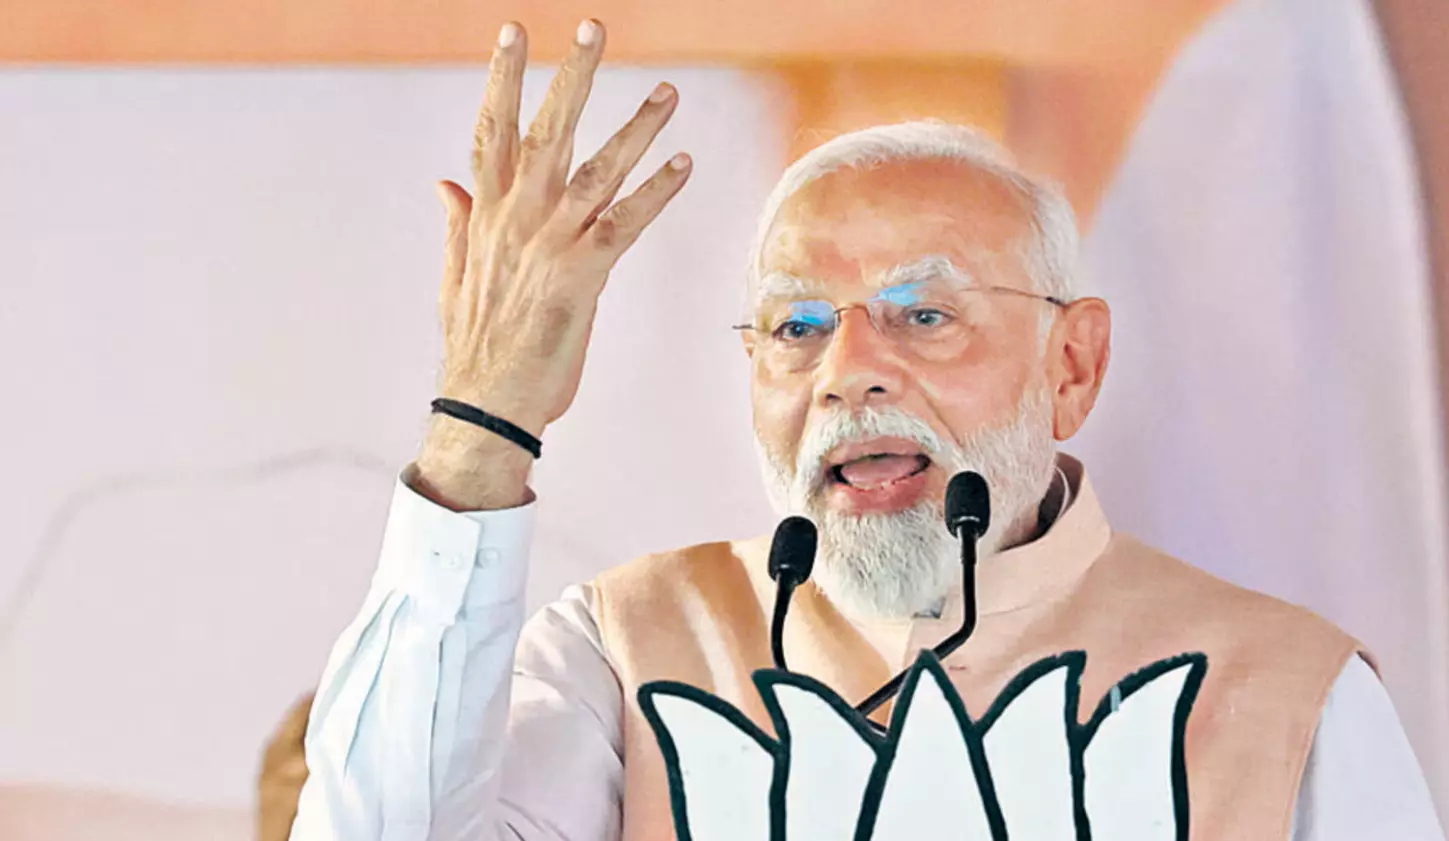 Those who are rejoicing will regret: PM Modi on electoral bond data